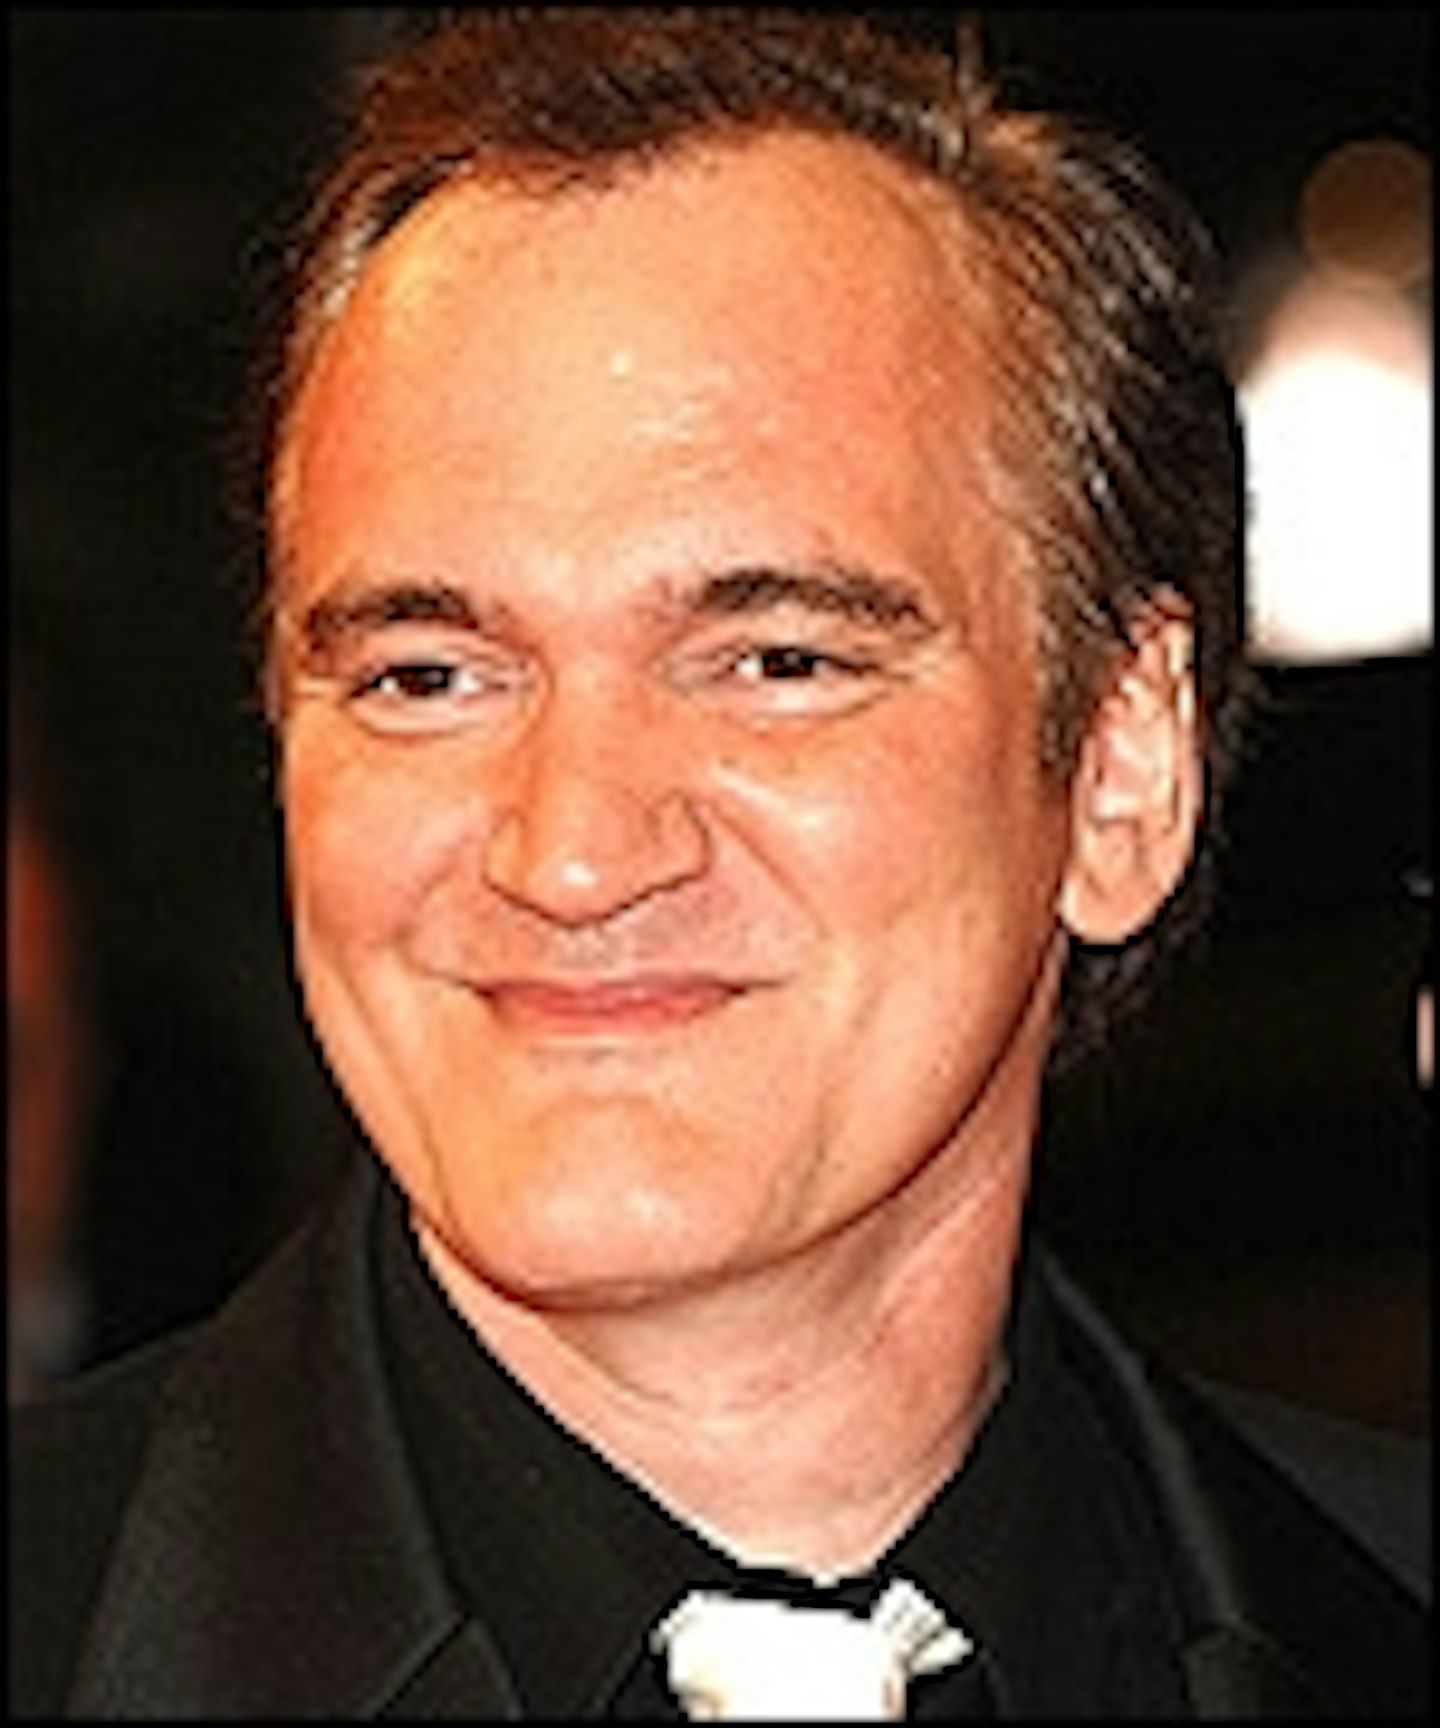 Tarantino Making His Western At Last?